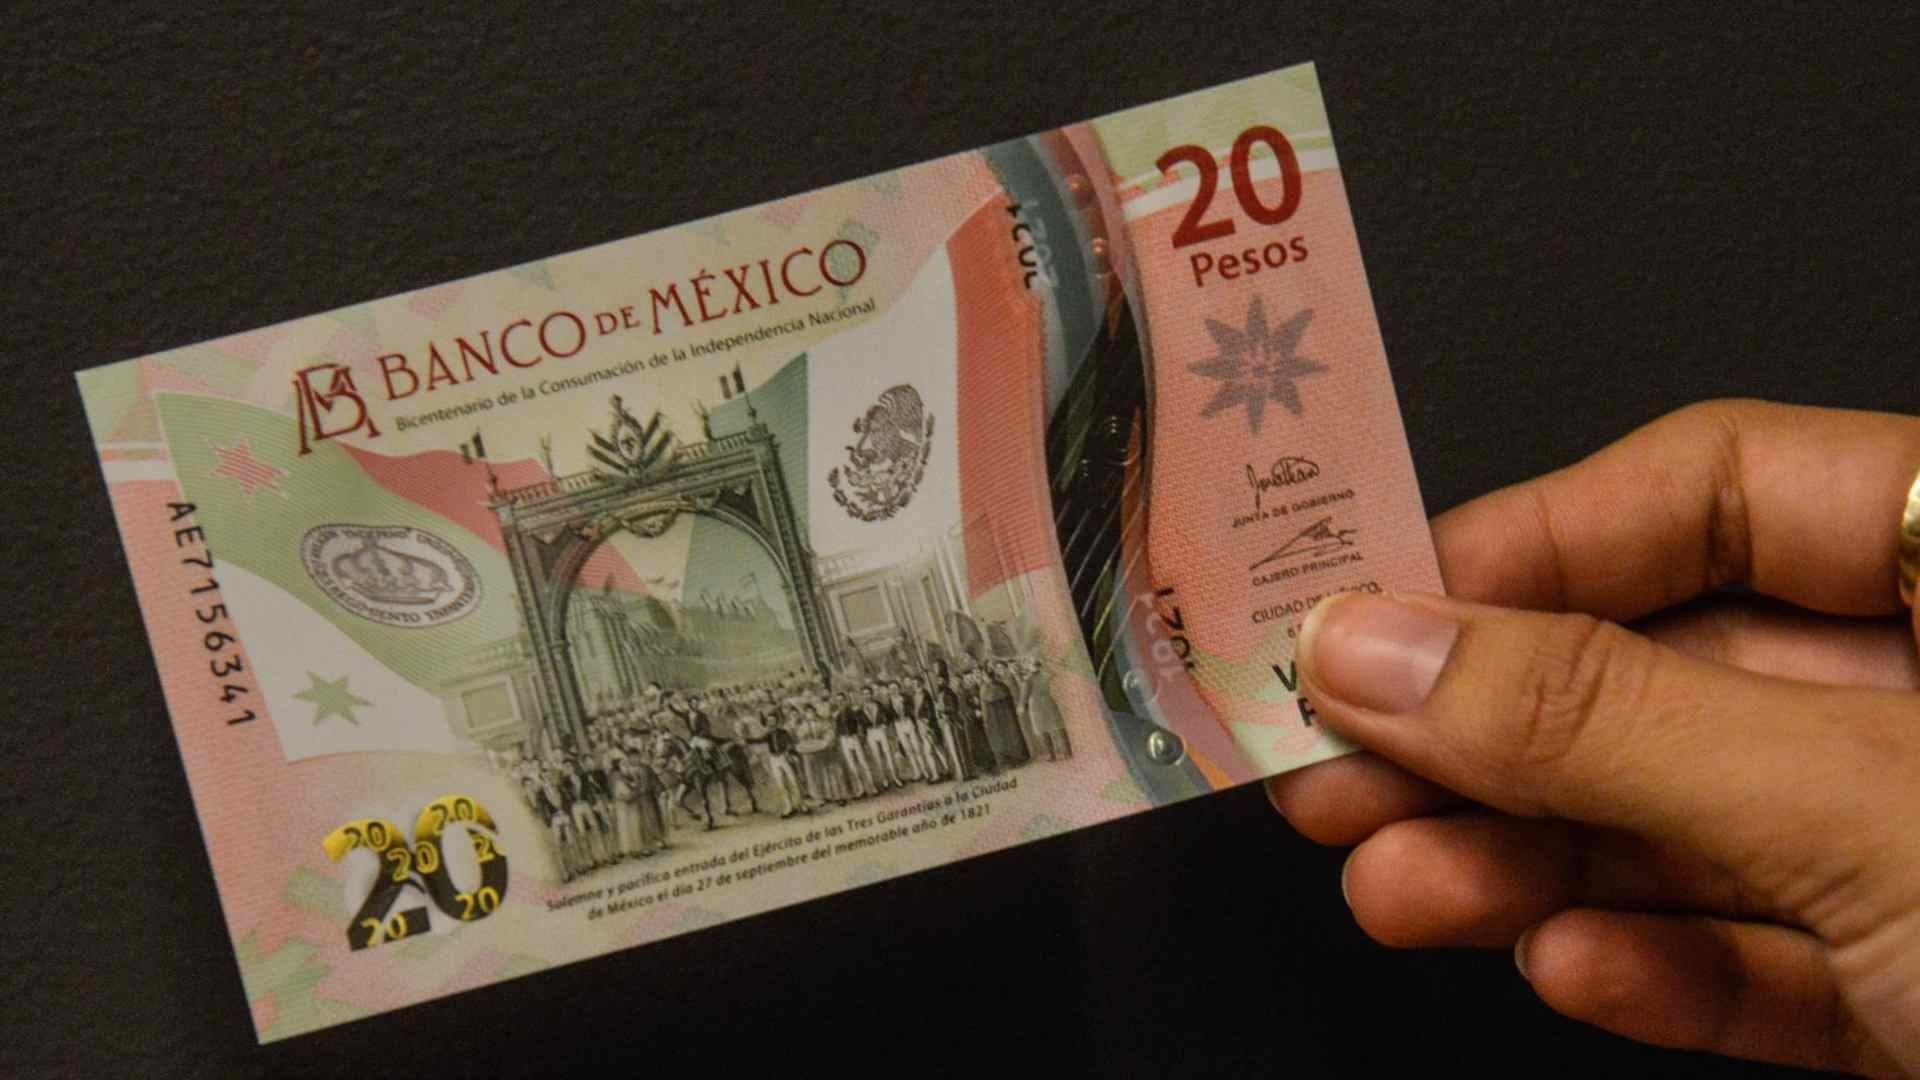 Banxico: ¿Por qué saldrá de circulación el billete de 20 pesos?